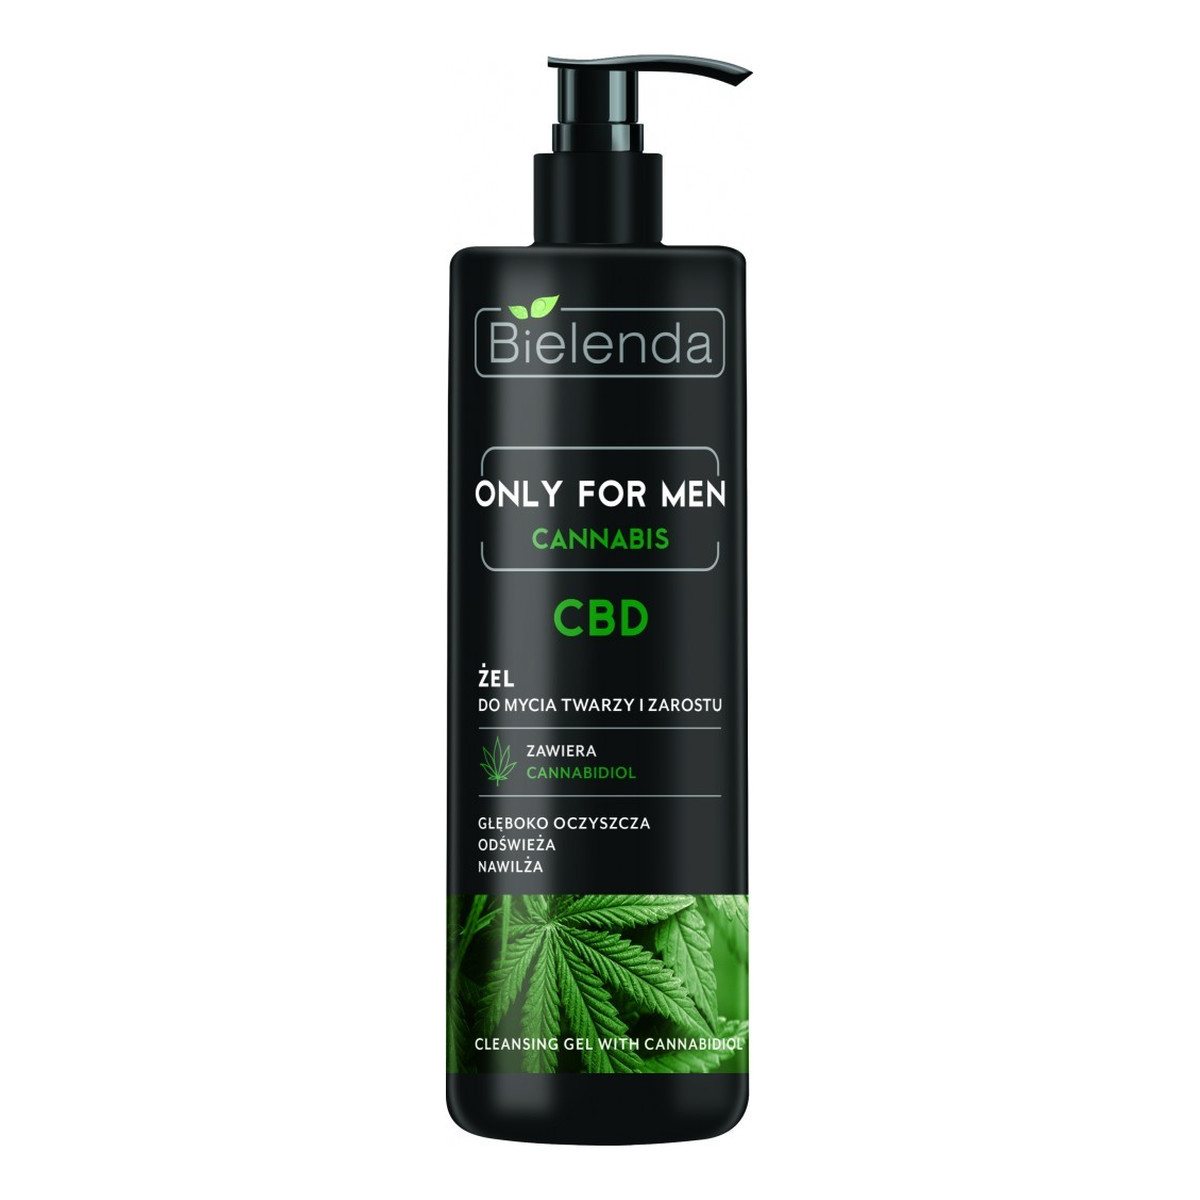 Bielenda Only for Men Cannabis CBD Żel do mycia twarzy i zarostu 190g